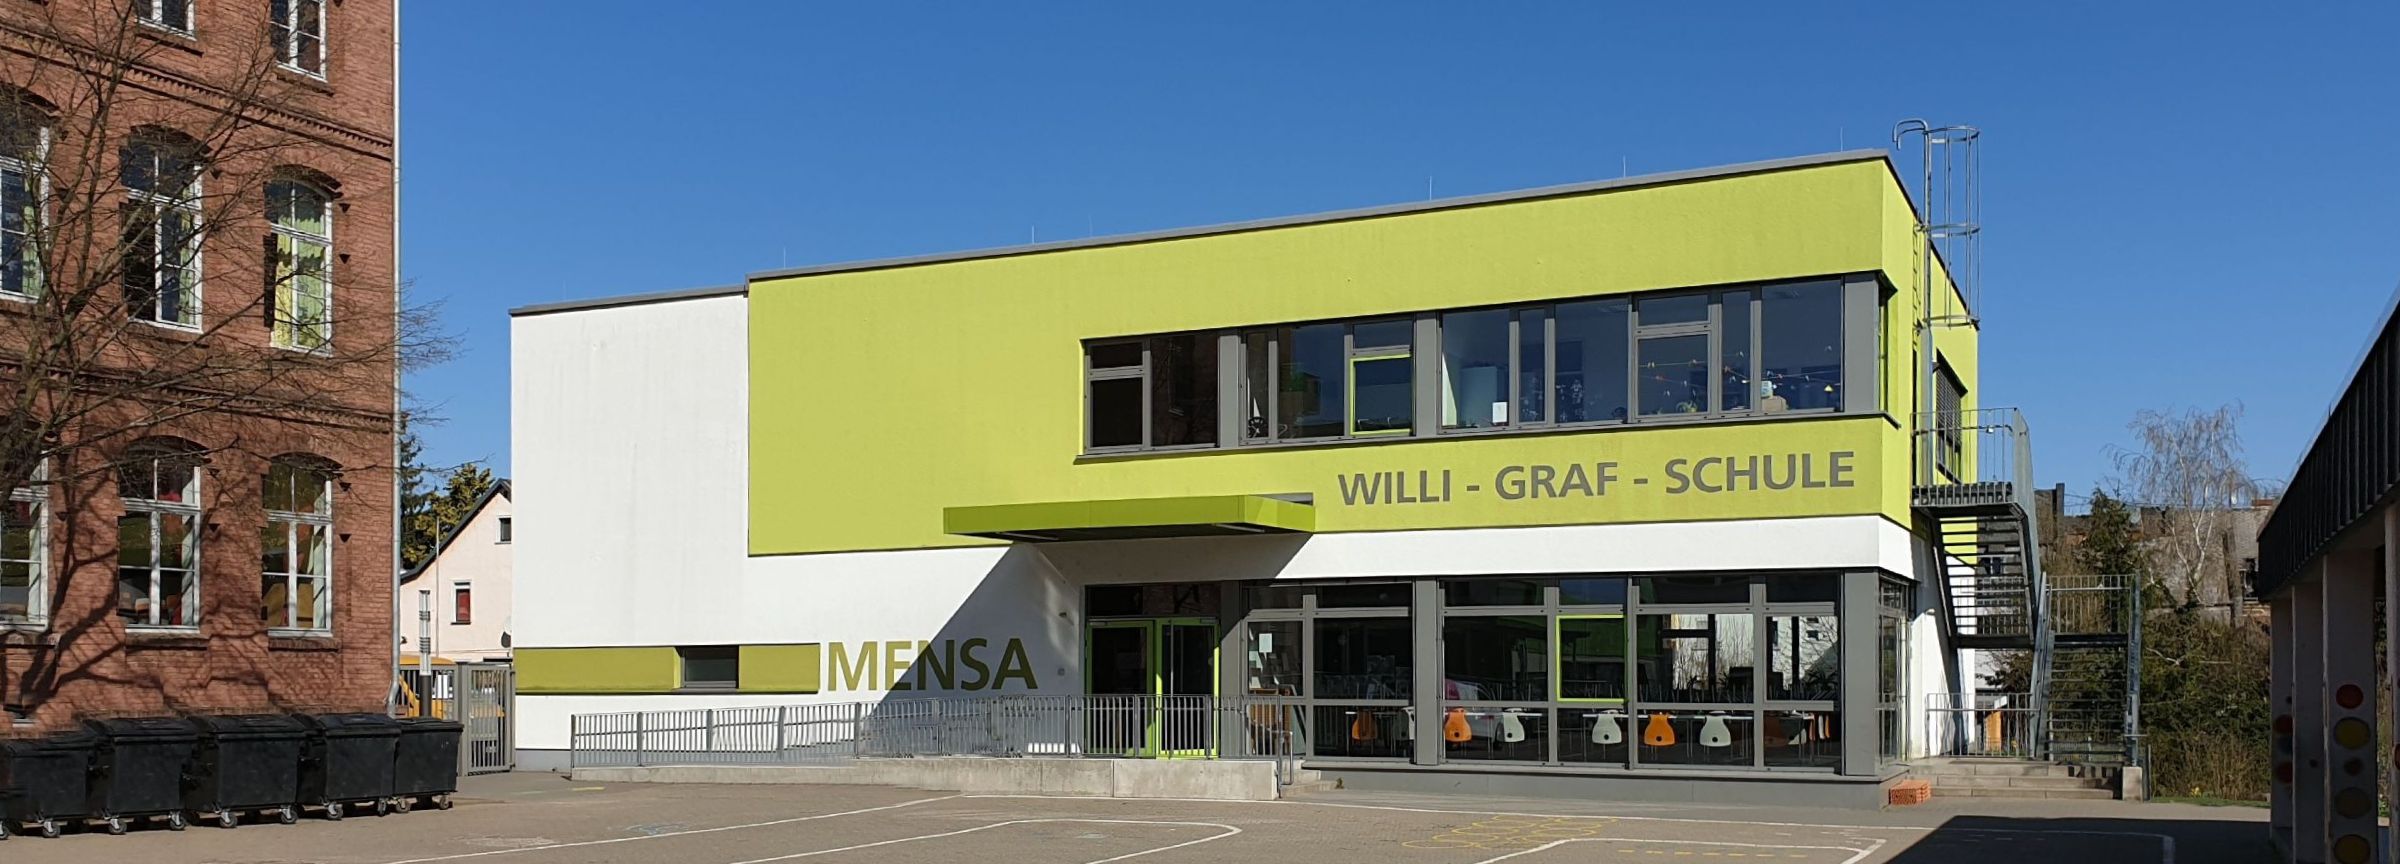 Willi-Graf-Schule